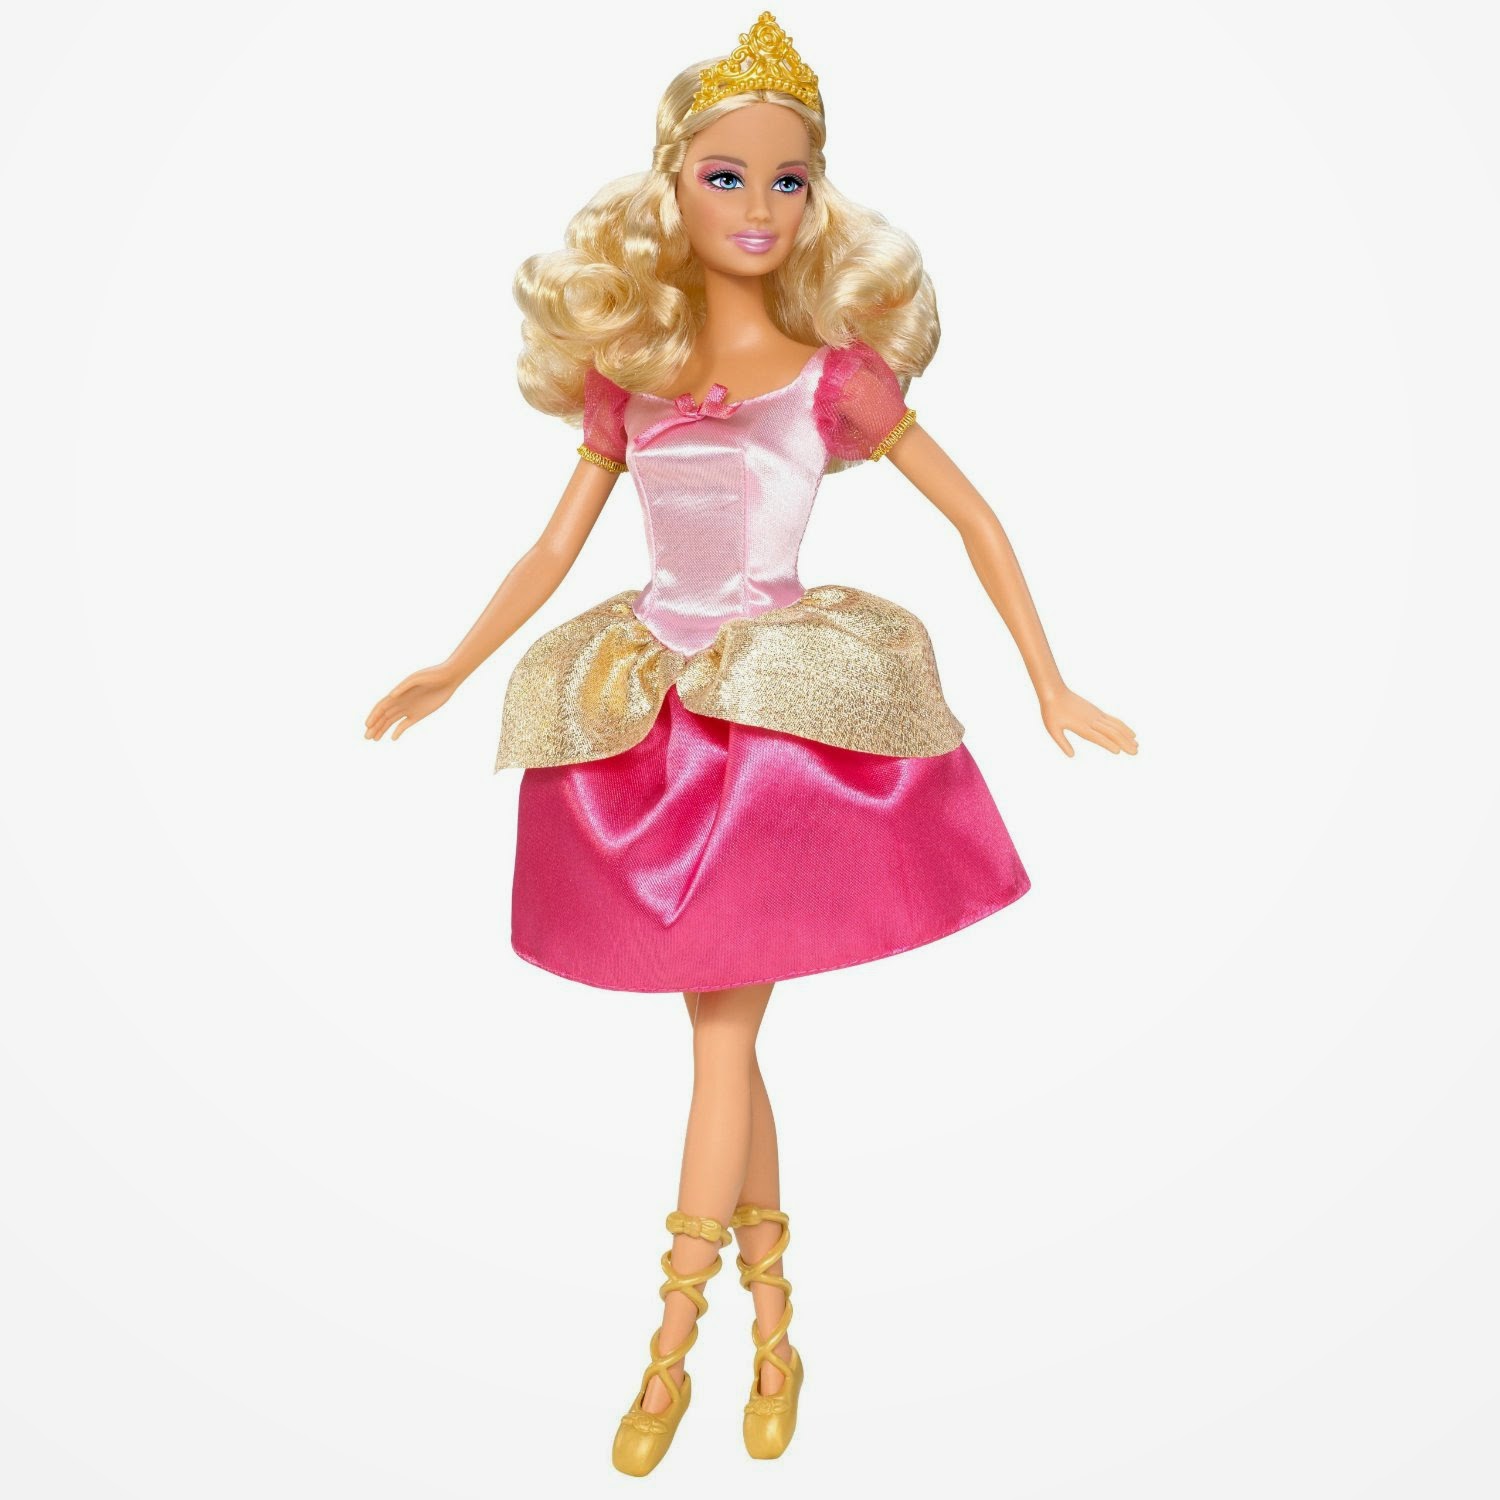 Kumpulan Gambar Boneka Barbie Cantik Dan Lucu Terbaru Untuk Anak